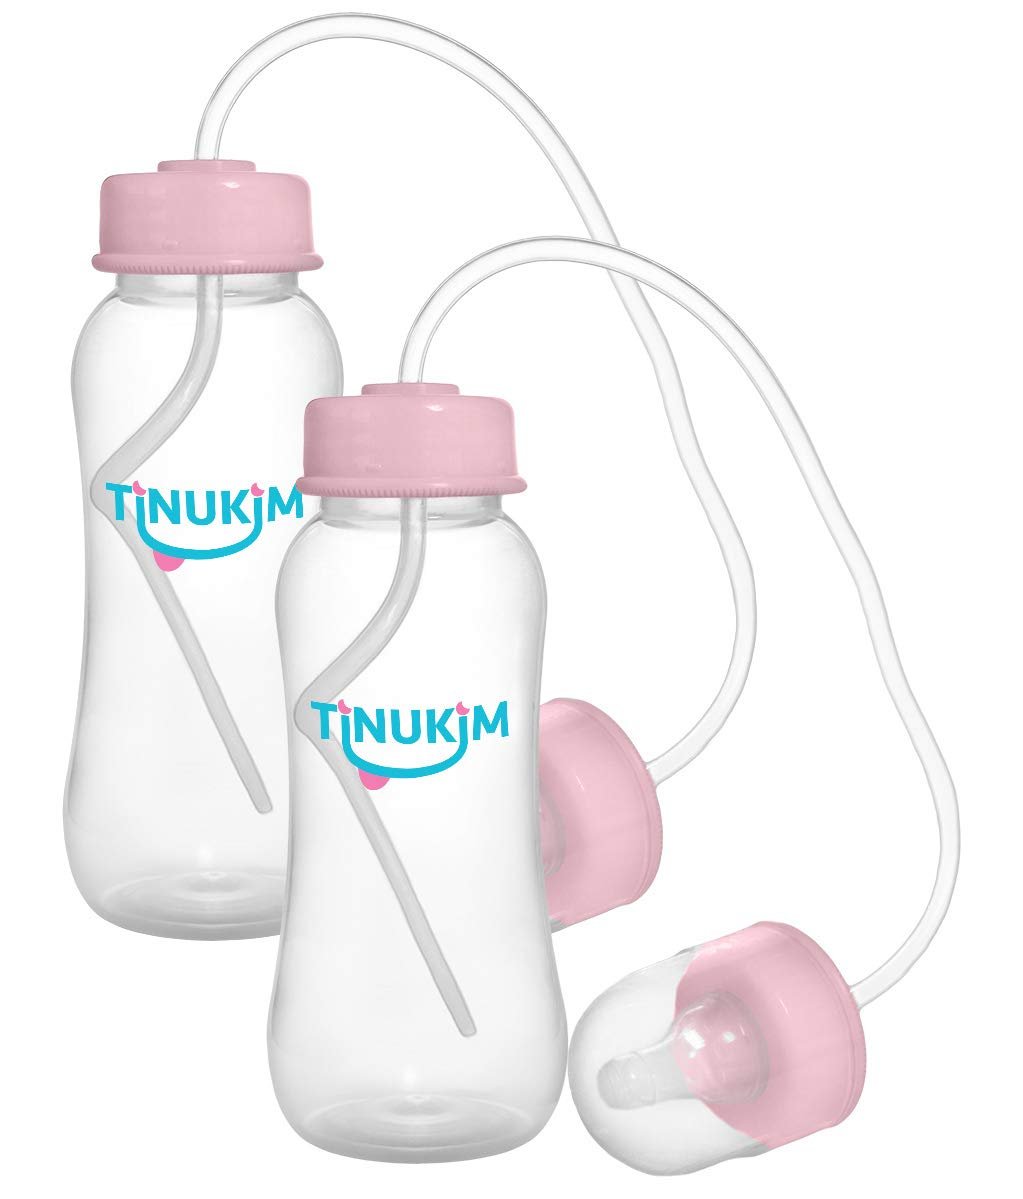 Tinukim iFeed Baby Bottle - 9 oz Self-Feeding Anti-Colic Tube, Blue - 2-Pack